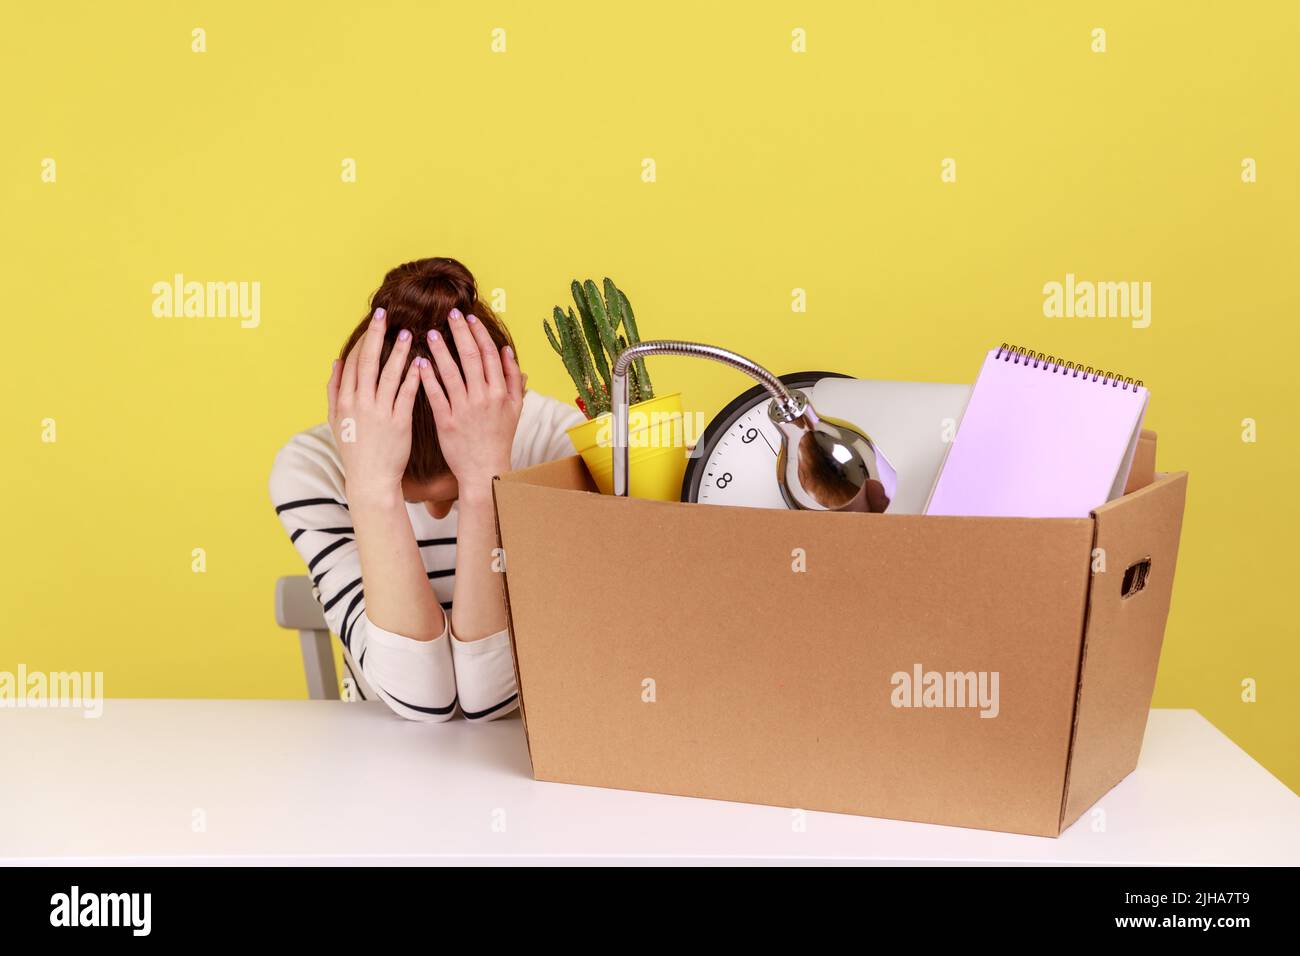 Traurig verärgert verzweifelte junge Büroangestellte, die am Arbeitsplatz mit ihren Sachen in einem Karton saß, kippte verzweifelt ihren Kopf. Studio-Innenaufnahme isoliert auf gelbem Hintergrund. Stockfoto